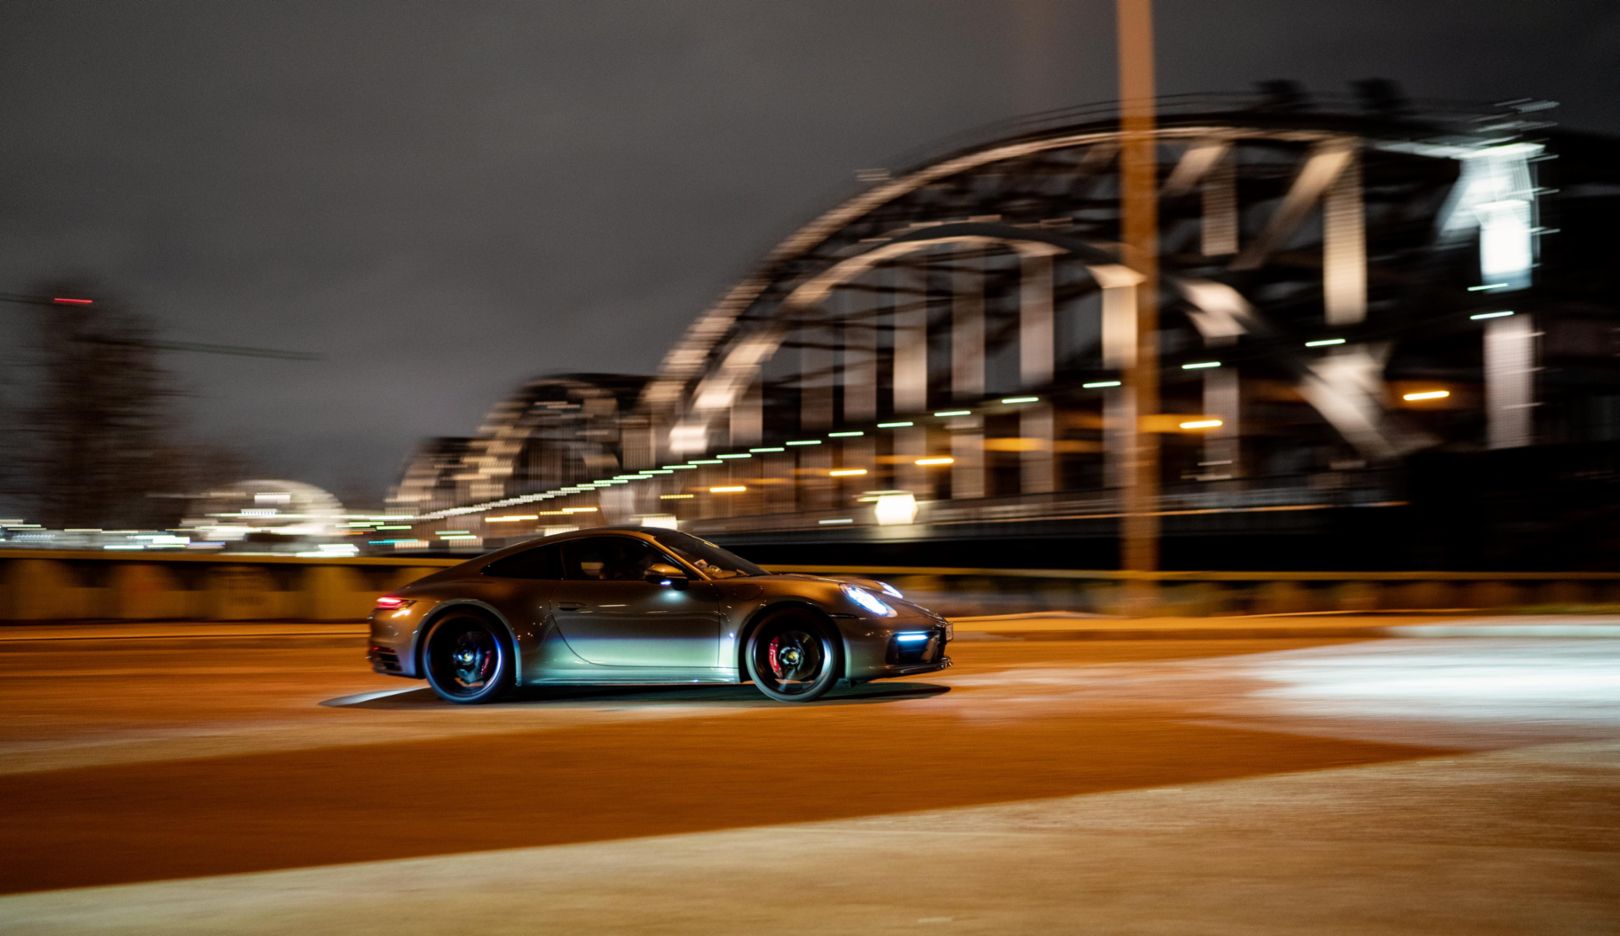 Eine berauschende Fahrt voller Inspiration durch die Nacht im Porsche 911 Carrera 4S.